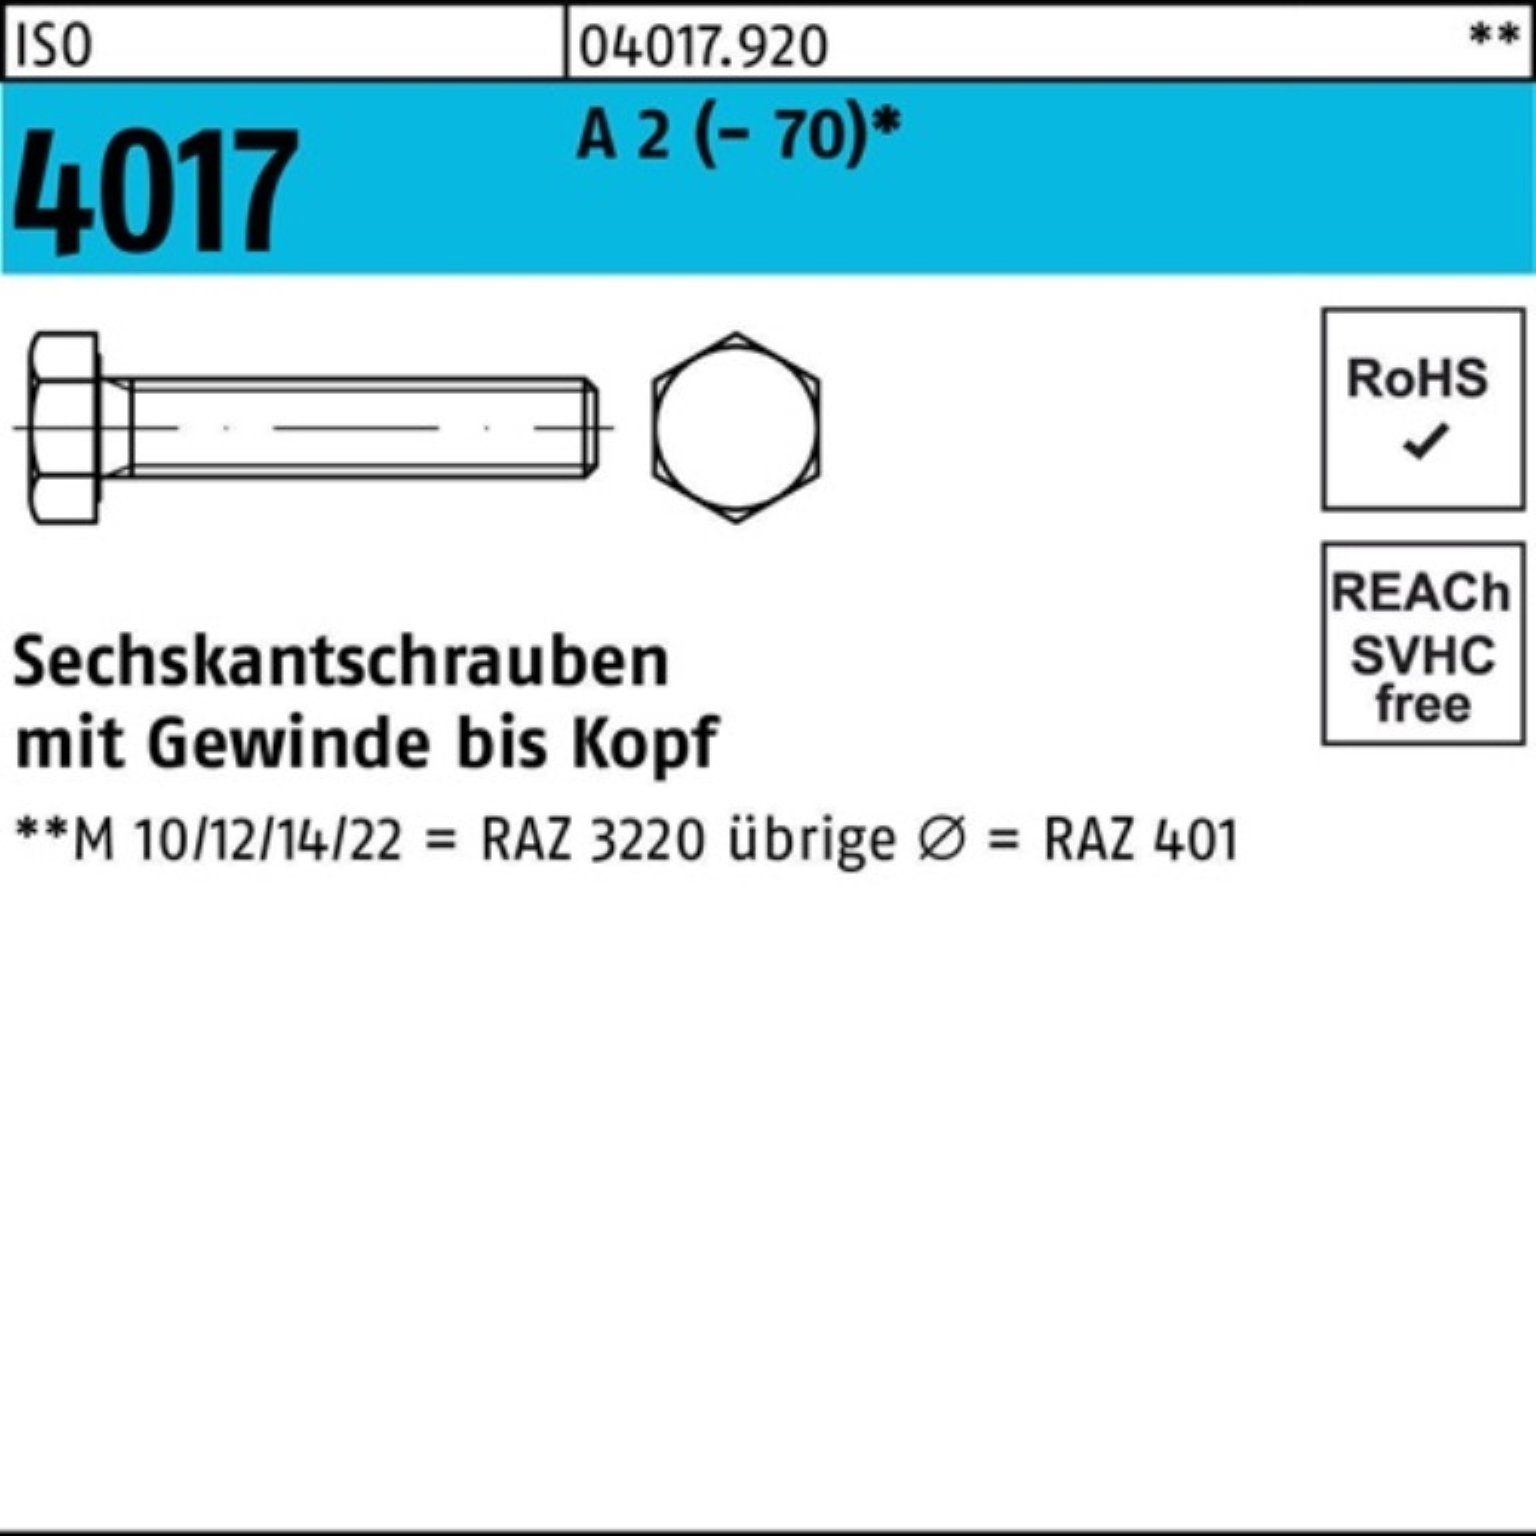 Bufab Sechskantschraube 100er Pack Sechskantschraube ISO 4017 VG M6x 80 A 2 (70) 100 Stück